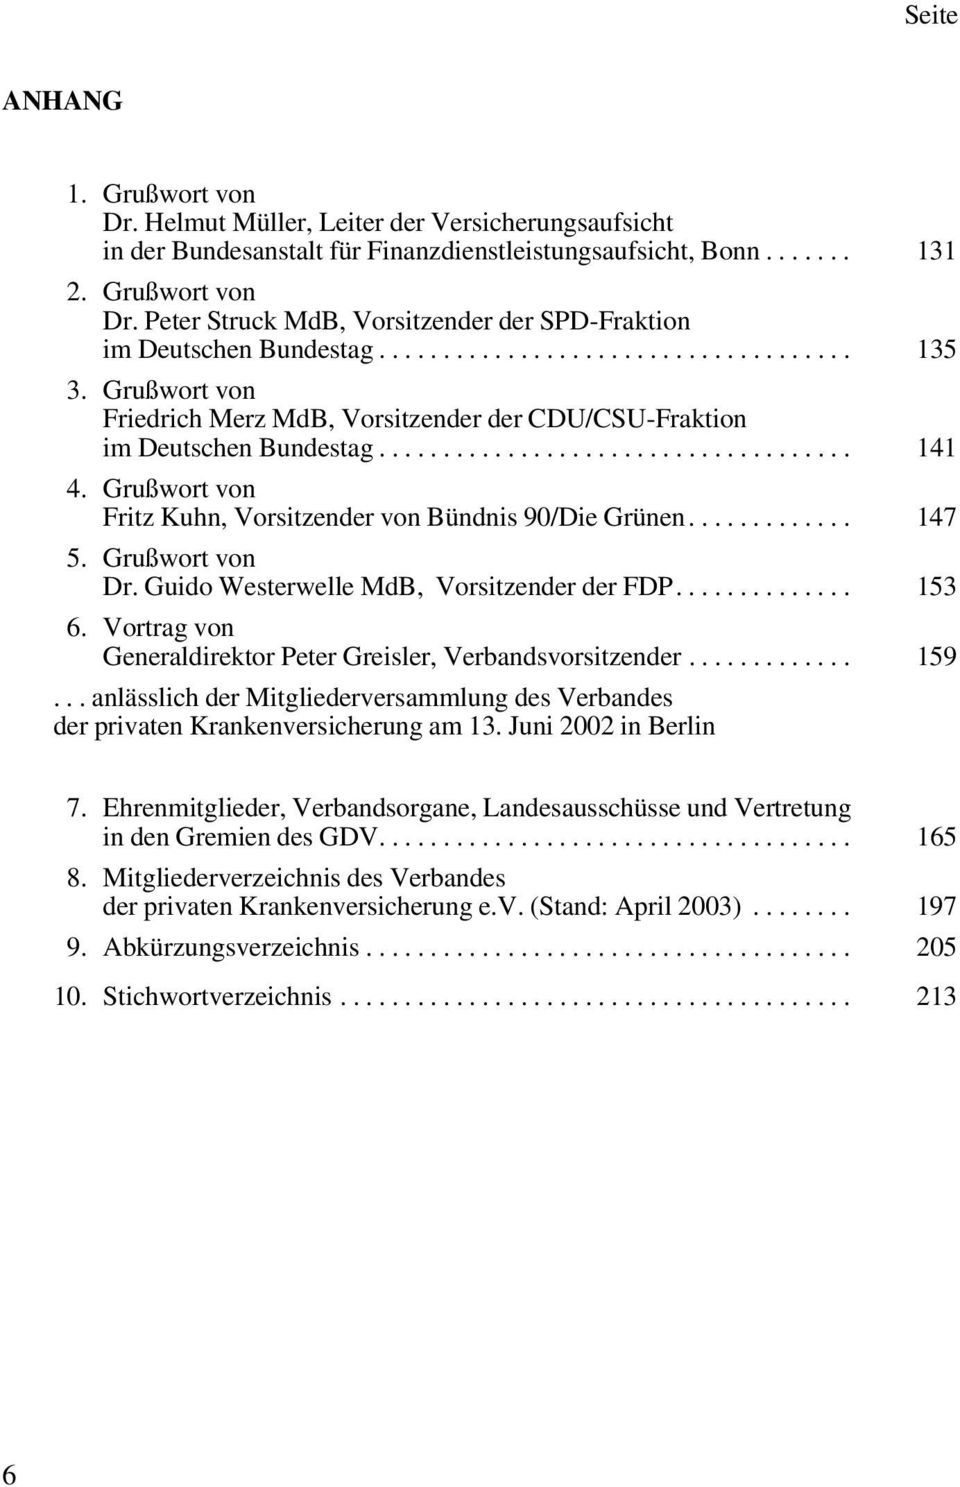 Grußwort von Fritz Kuhn, Vorsitzender von Bündnis 90/Die Grünen............. 147 5. Grußwort von Dr. Guido Westerwelle MdB, Vorsitzender der FDP.............. 153 6.